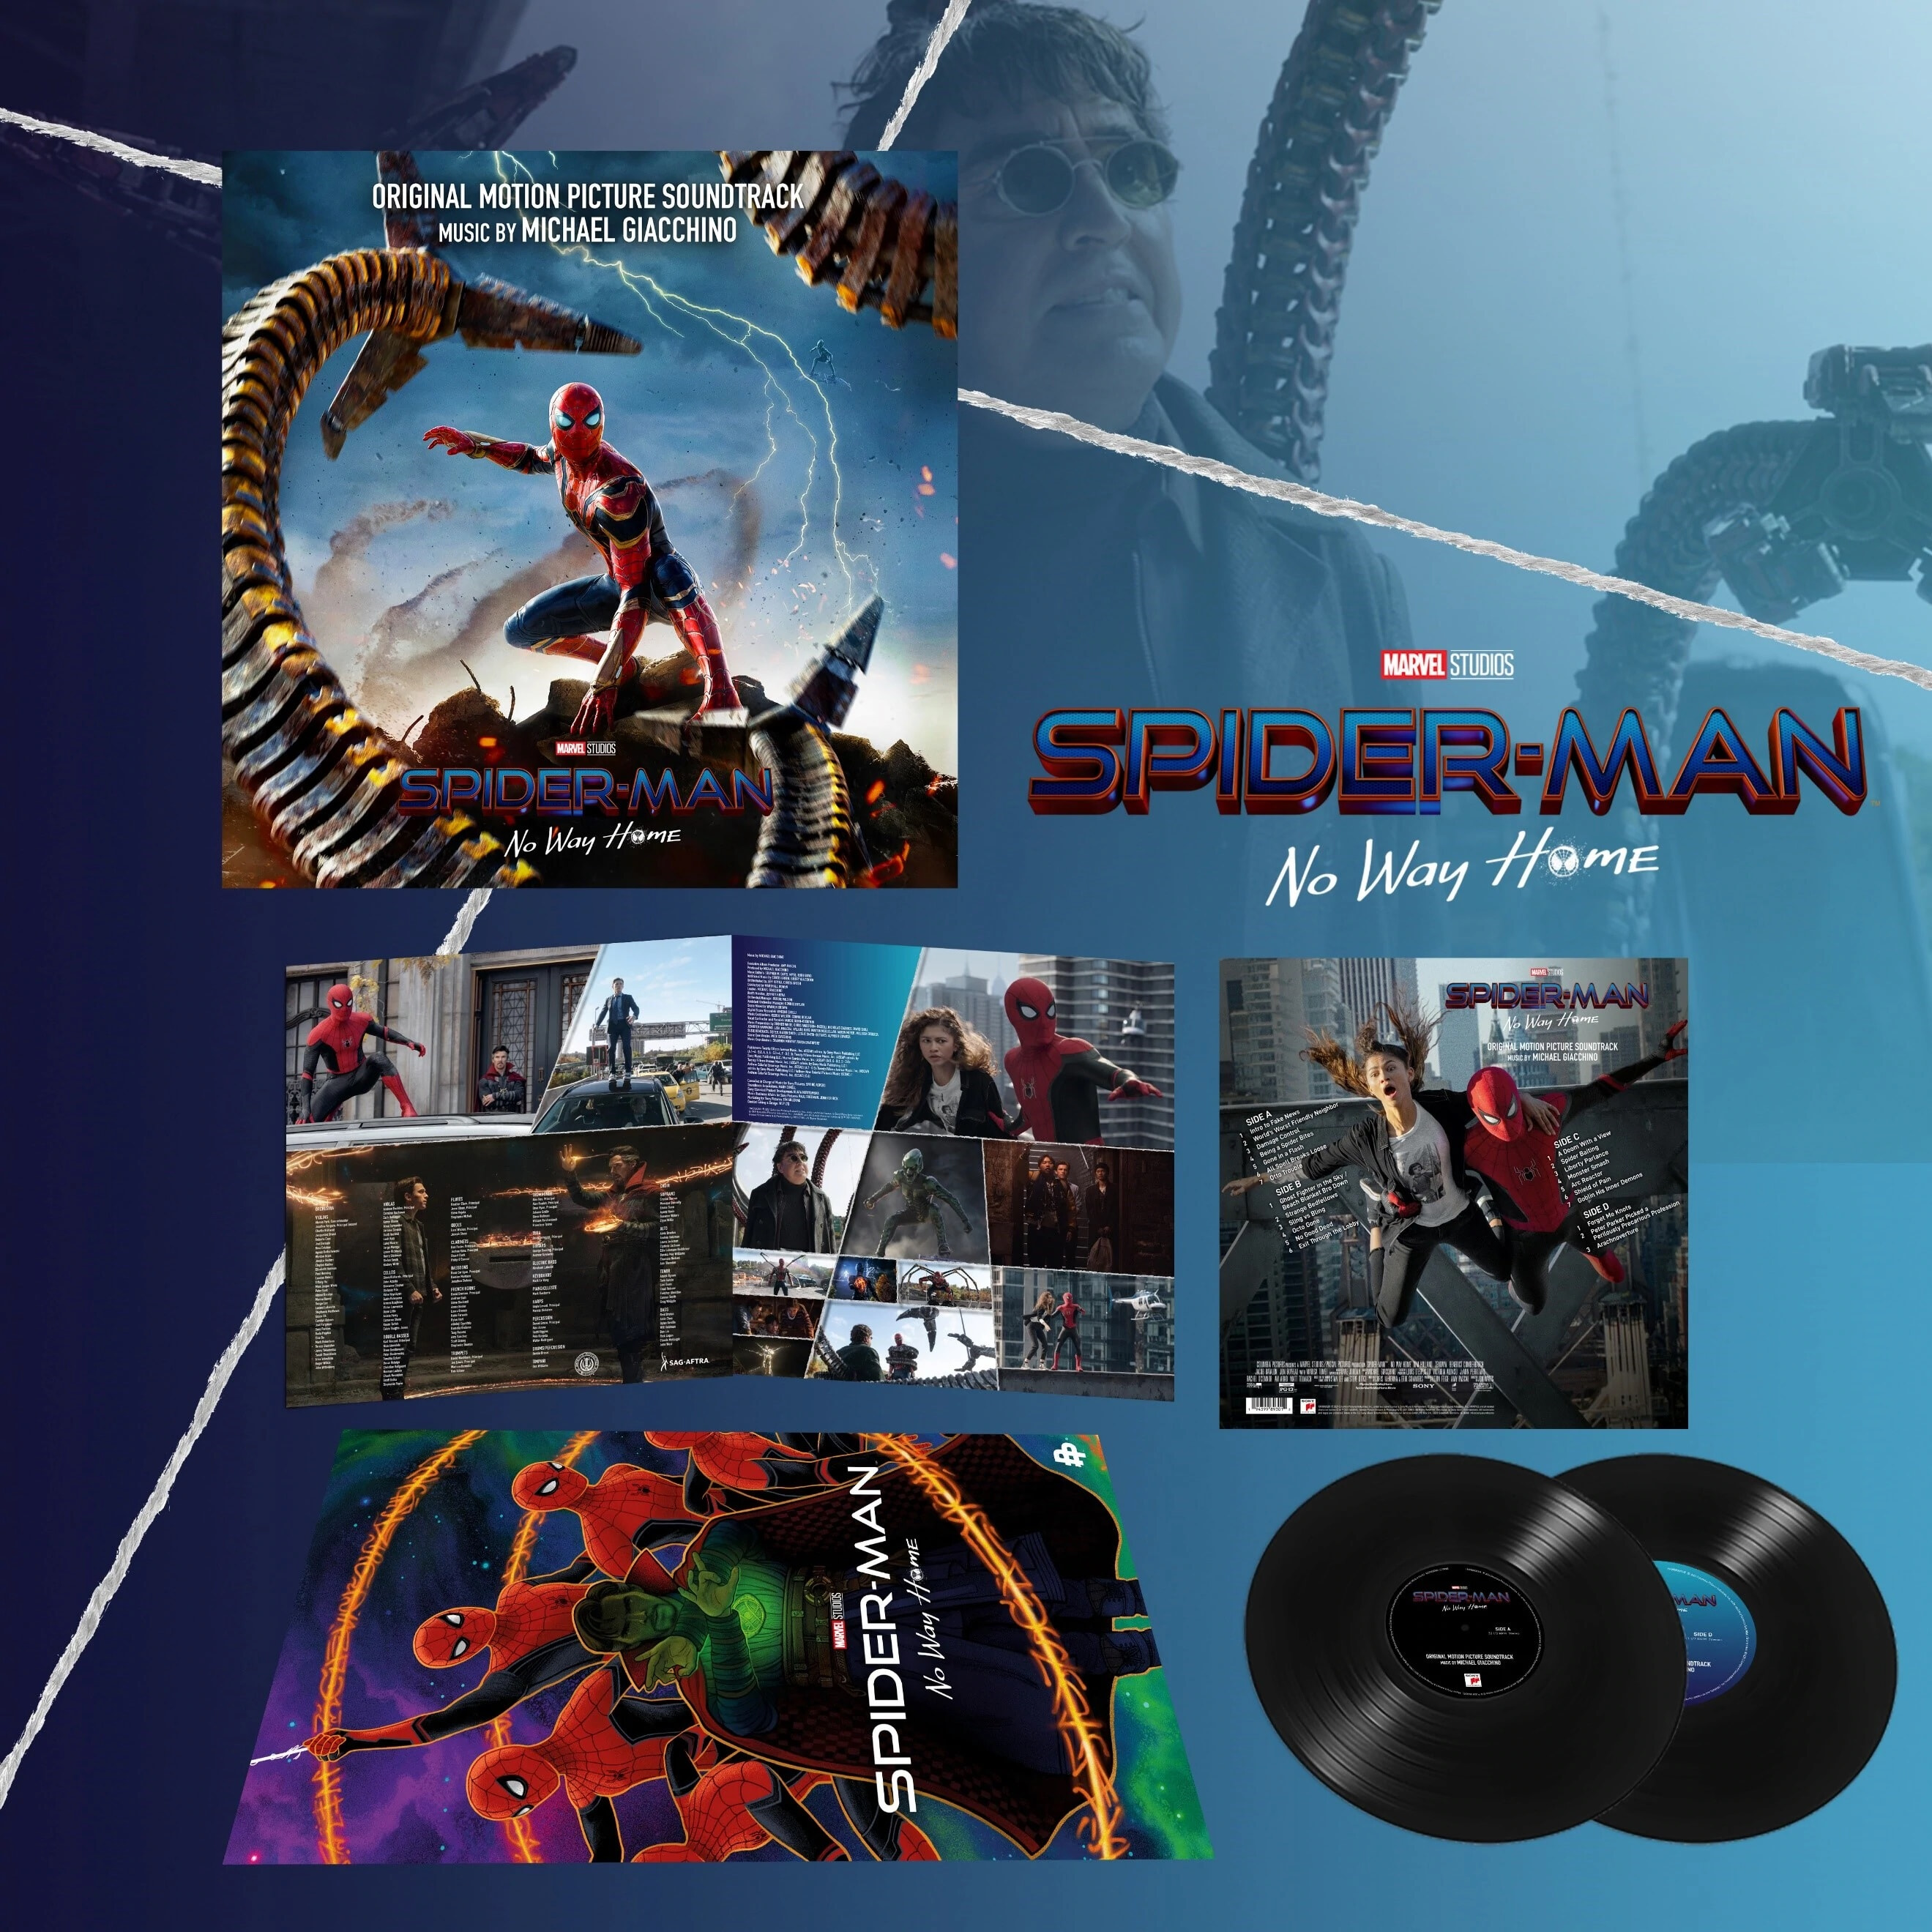 스파이더맨: 노 웨이 홈 영화음악 (Spider-Man: No Way Home OST by Michael Giacchino) [2LP] 